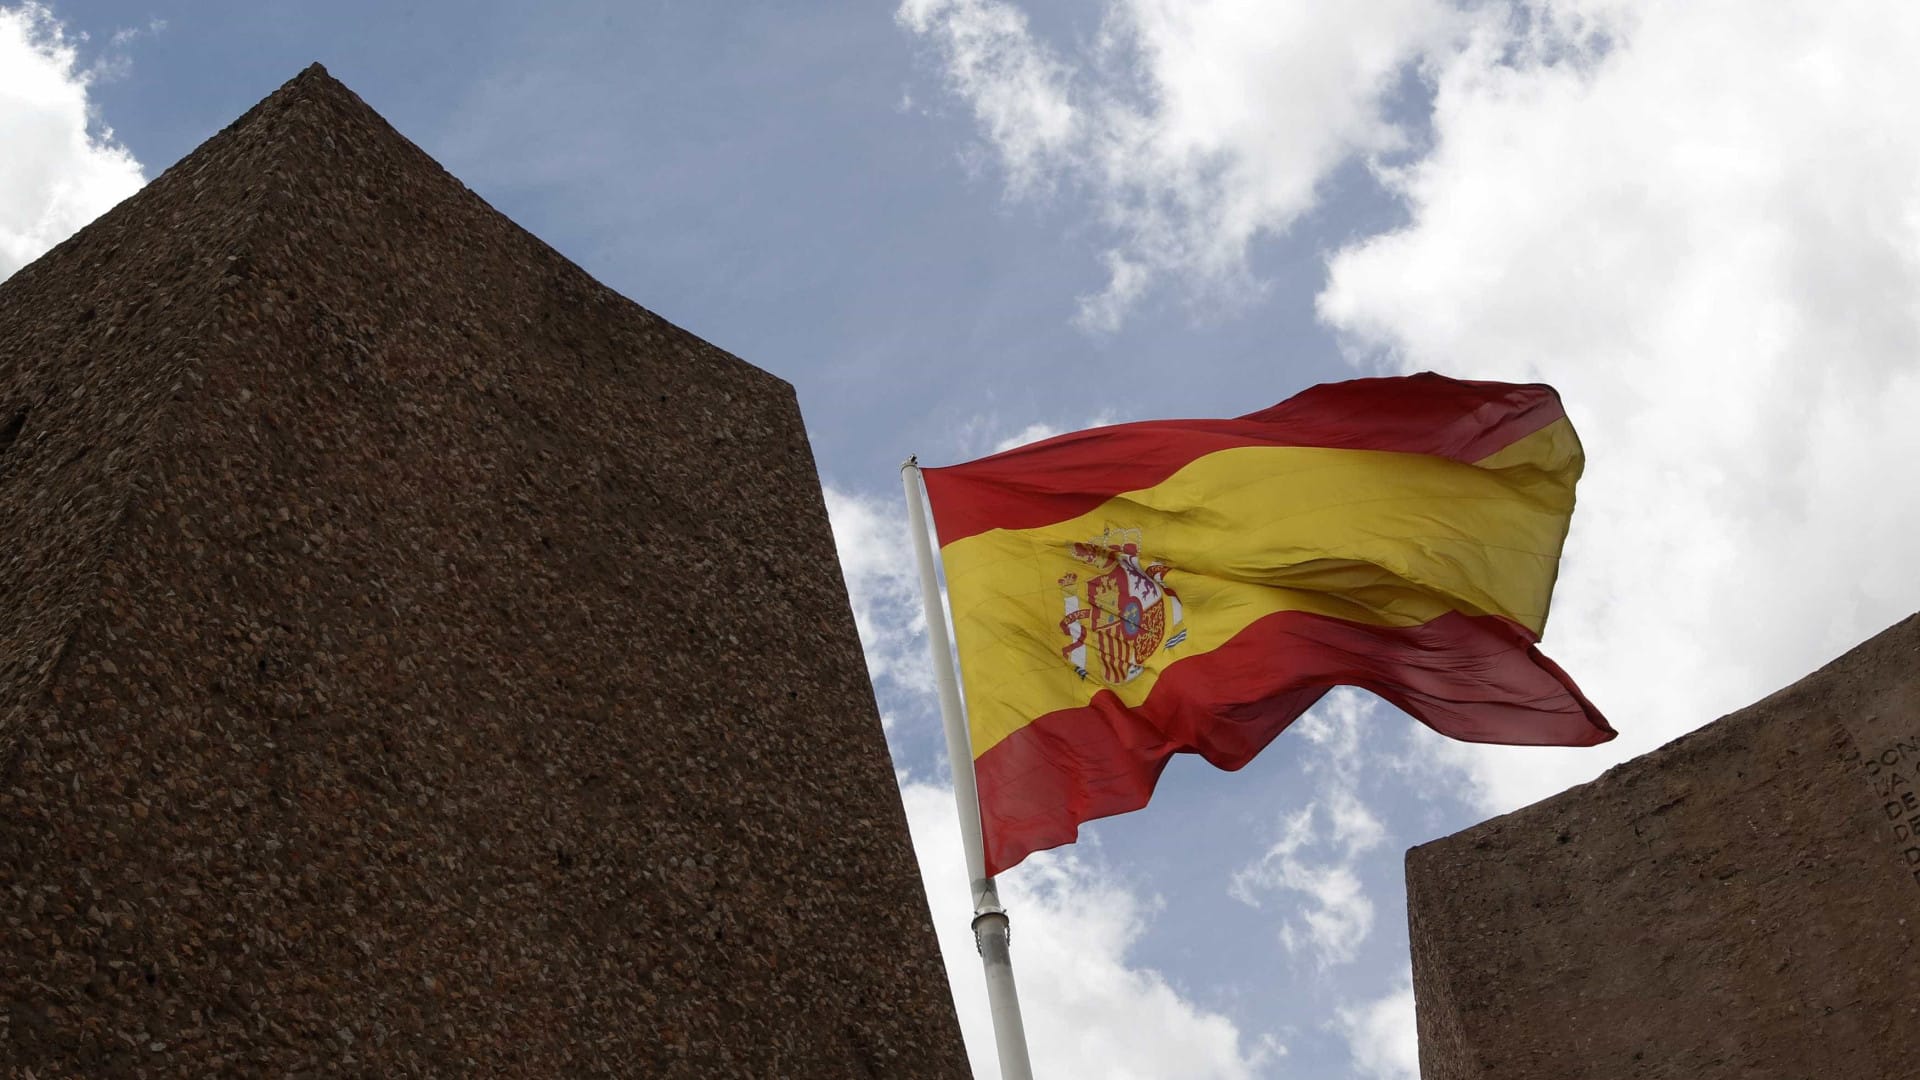 No parlamento de Castela e Leão, apenas a bandeira espanhola tremula. Foto: Reprodução da Internet.